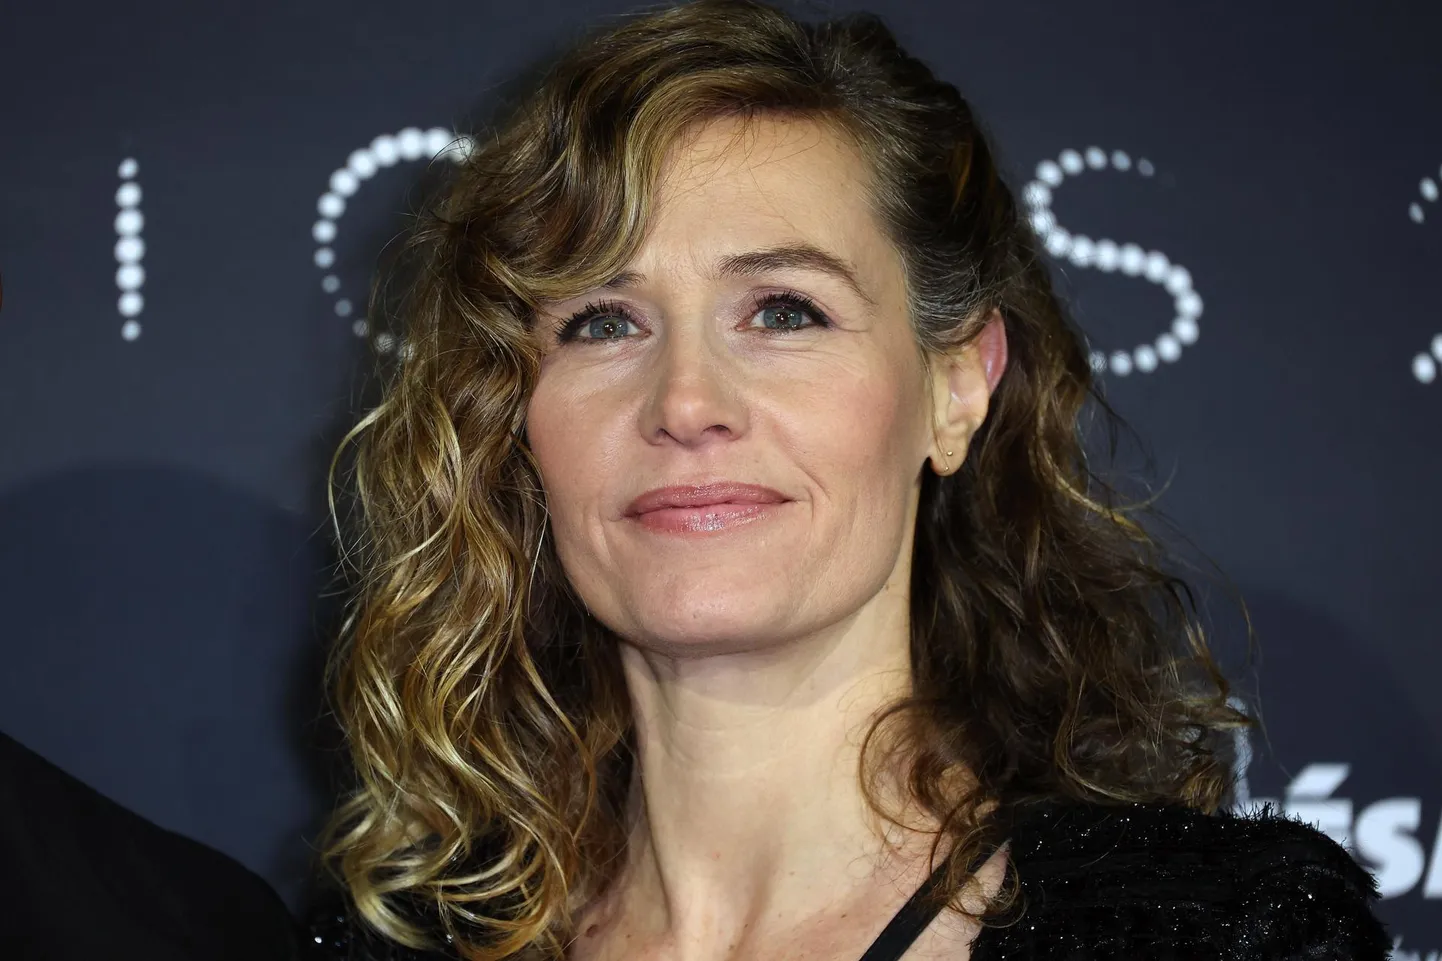 Cécile de France Prantsuse tähtsaimate filmiauhindade Césarite väljakuulutamise lõunal jaanuari keskel.